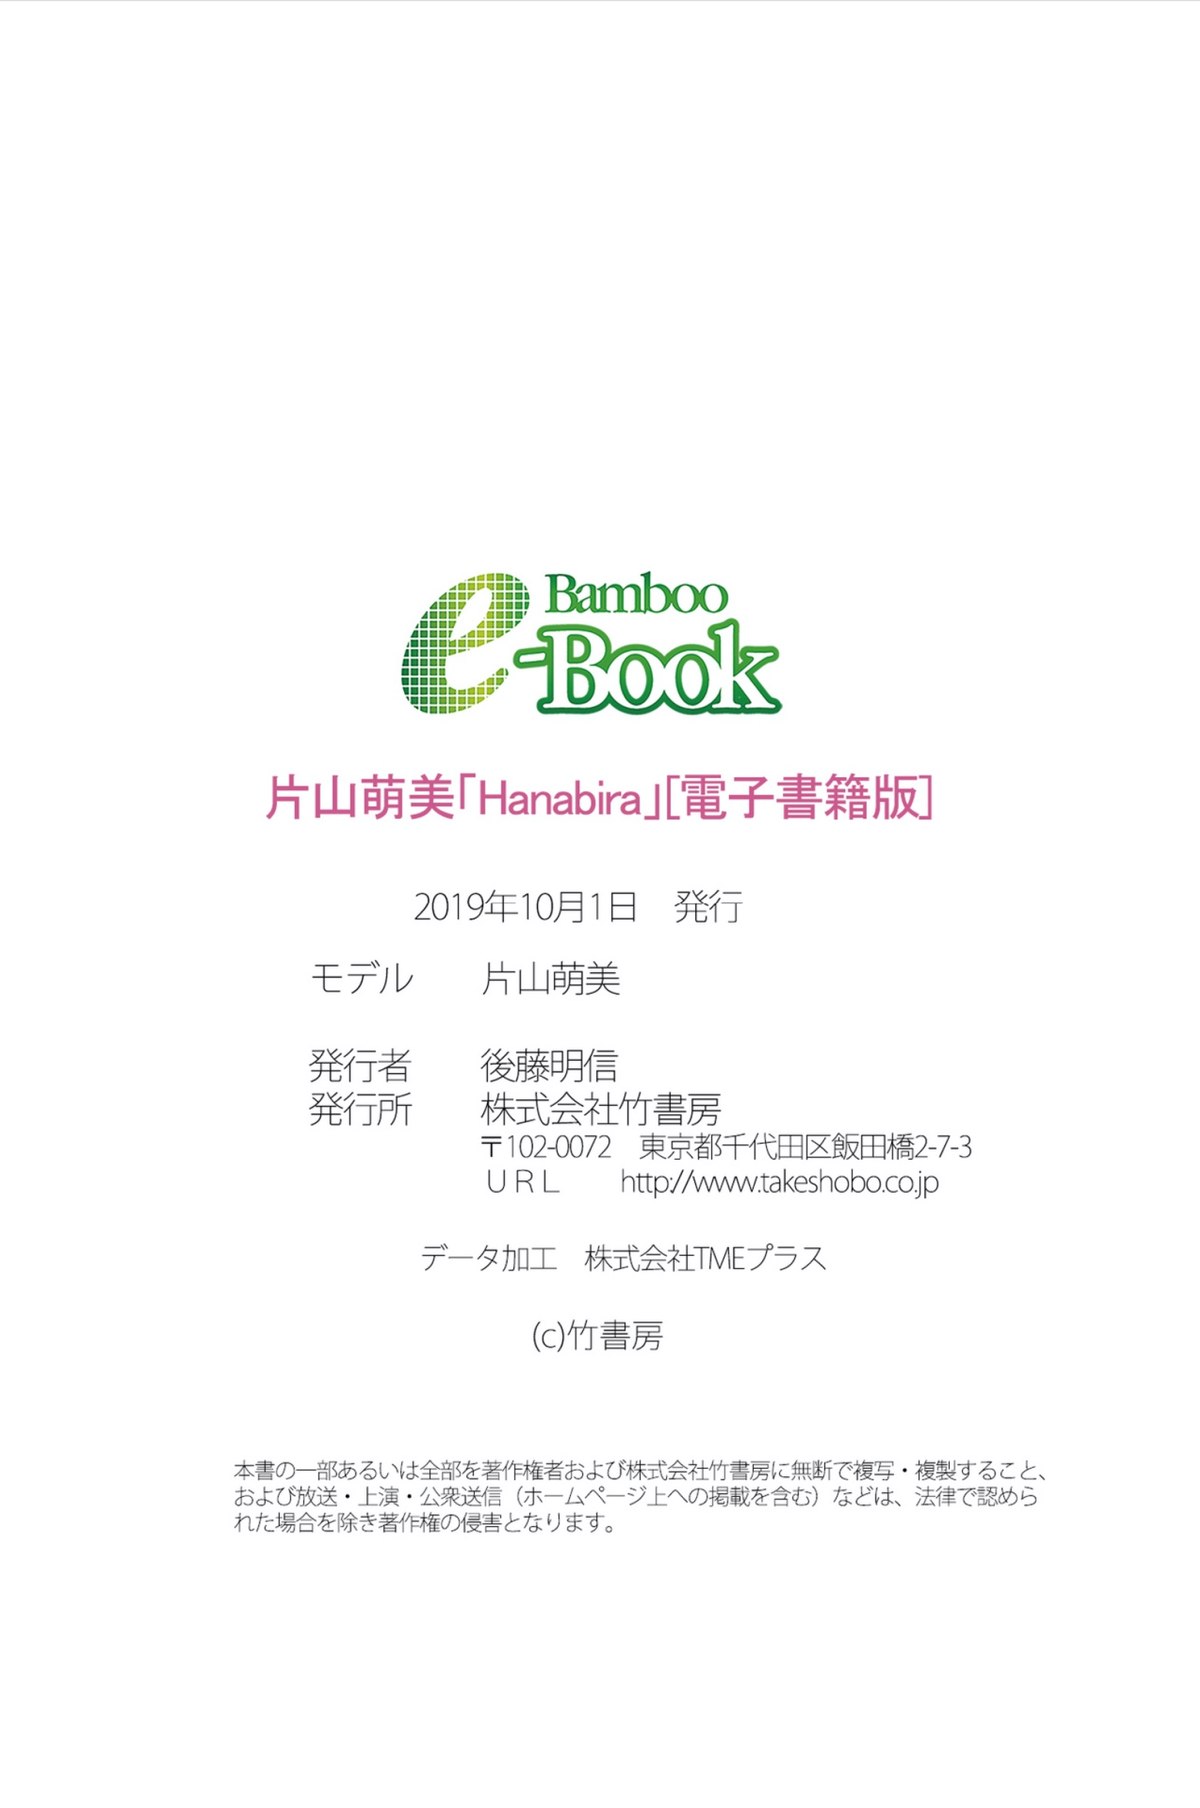 Bamboo e Book 2019 10 04 片山萌美 Hanabira 0059 1144833280.jpg